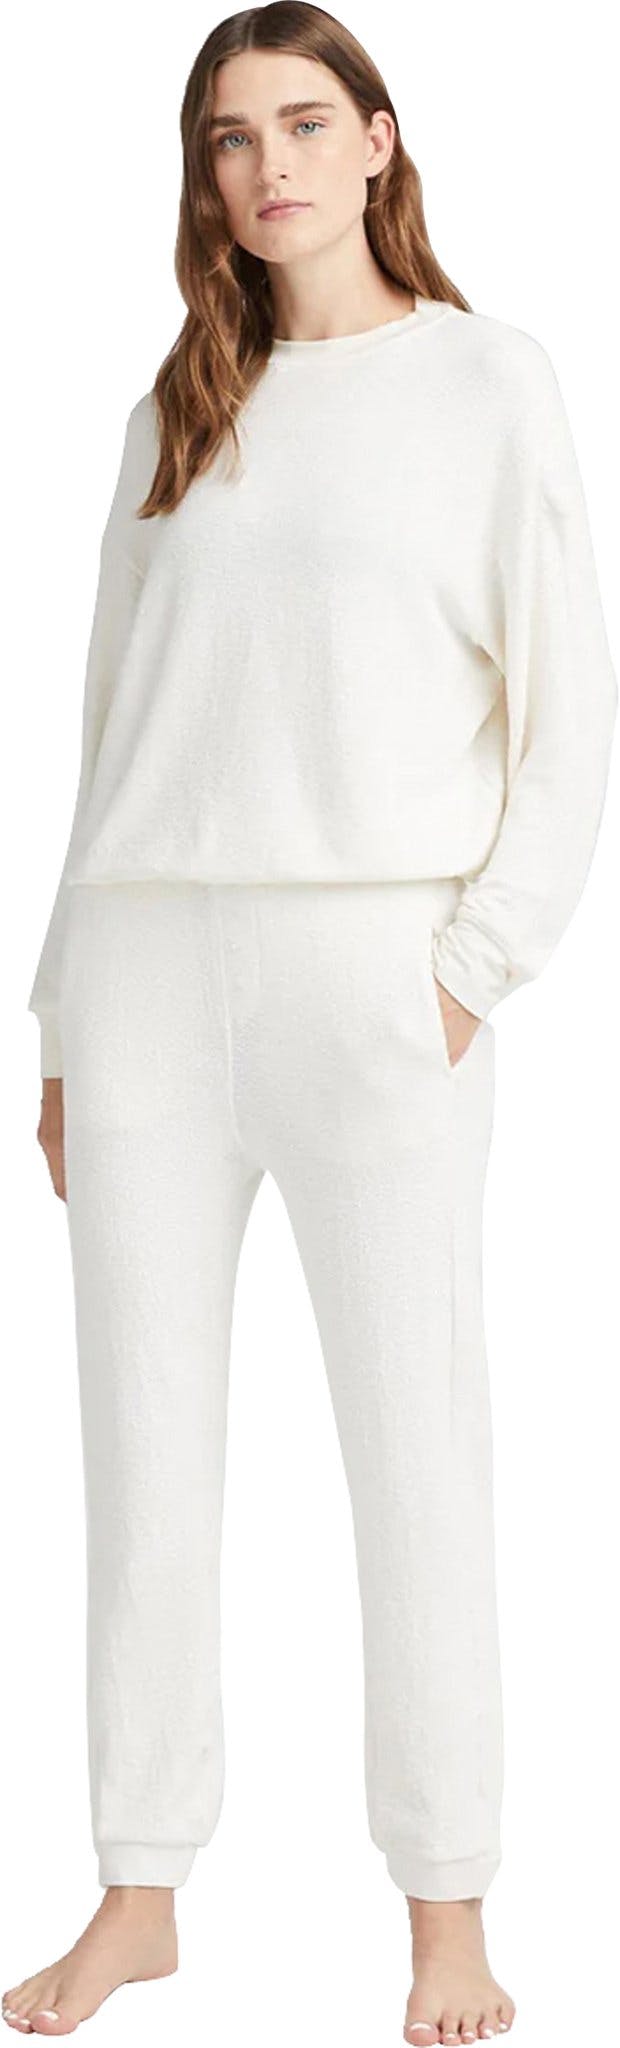 Numéro de l'image de la galerie de produits 3 pour le produit Pantalon Unwind en tricot Bounce - Femme